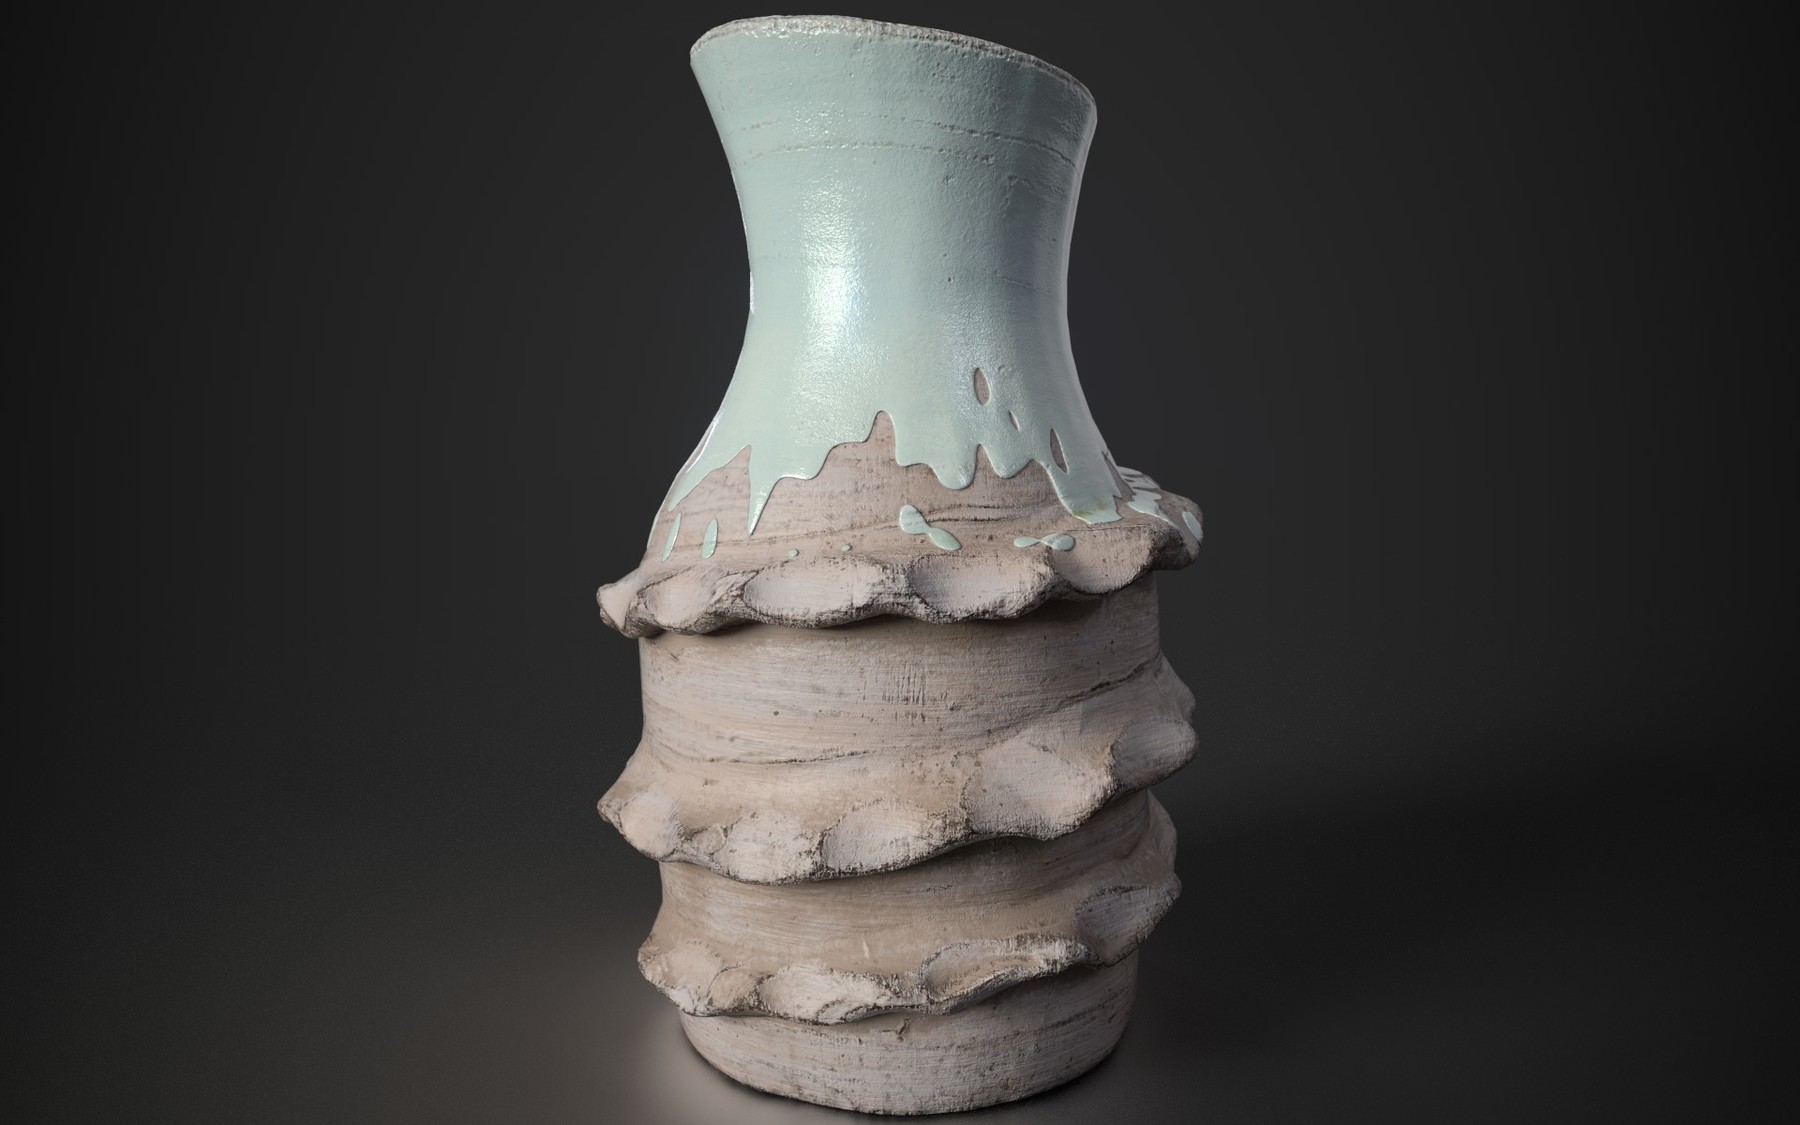 Speckled ceramic glaze on Substance 3D Community Assets